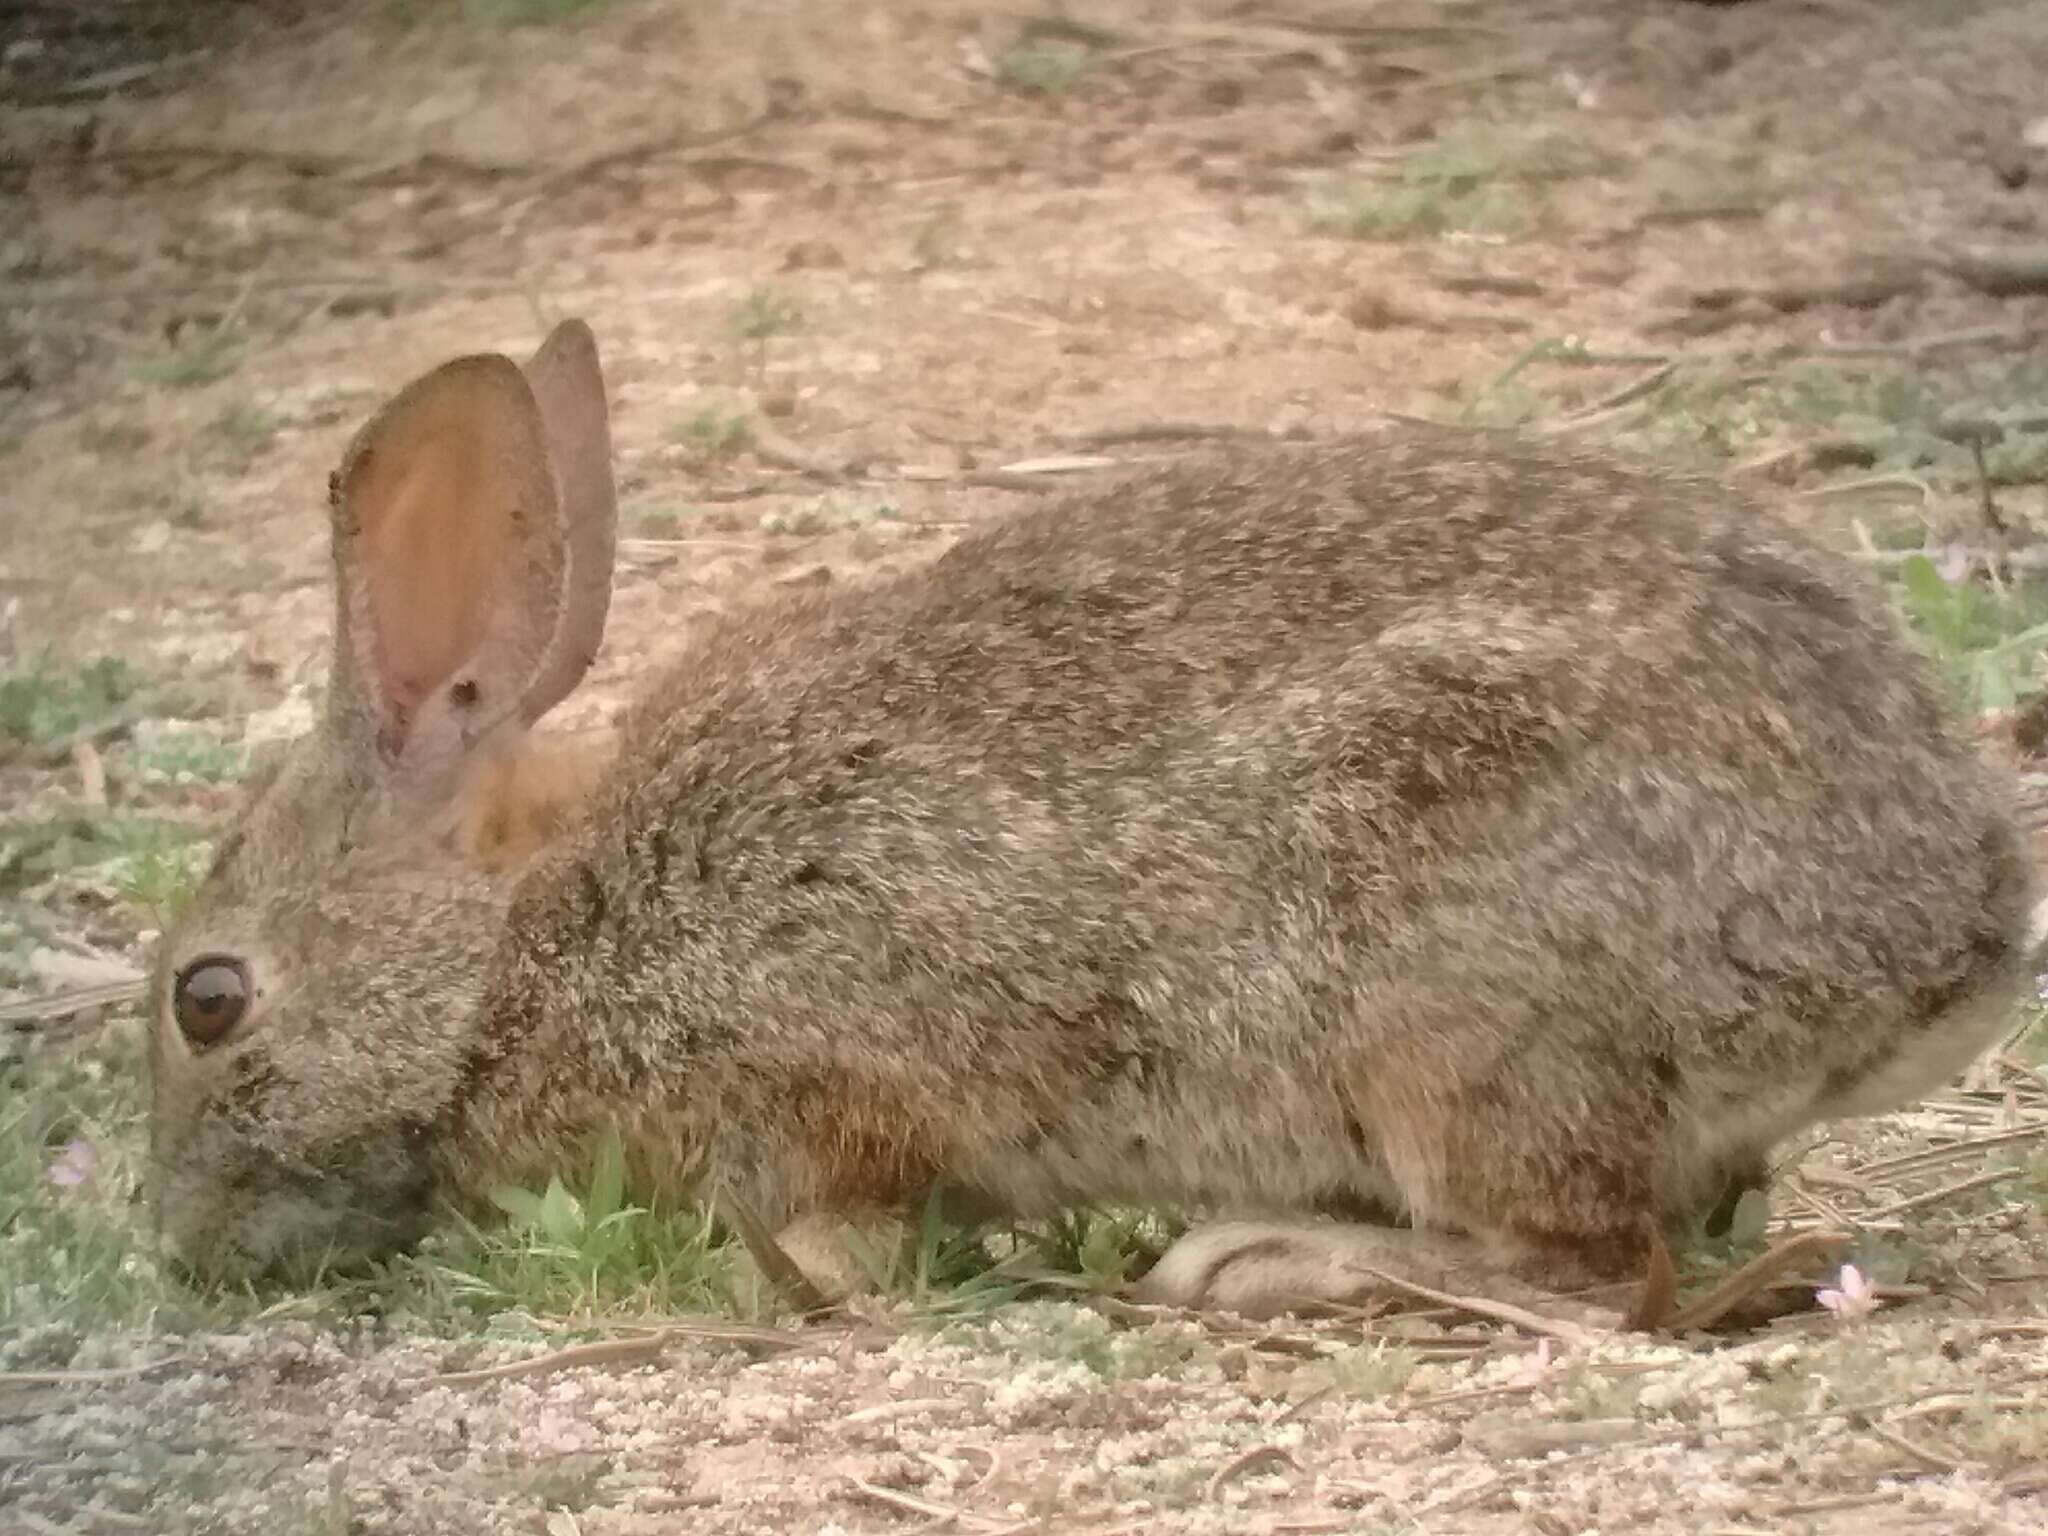 Image of Brush Rabbit